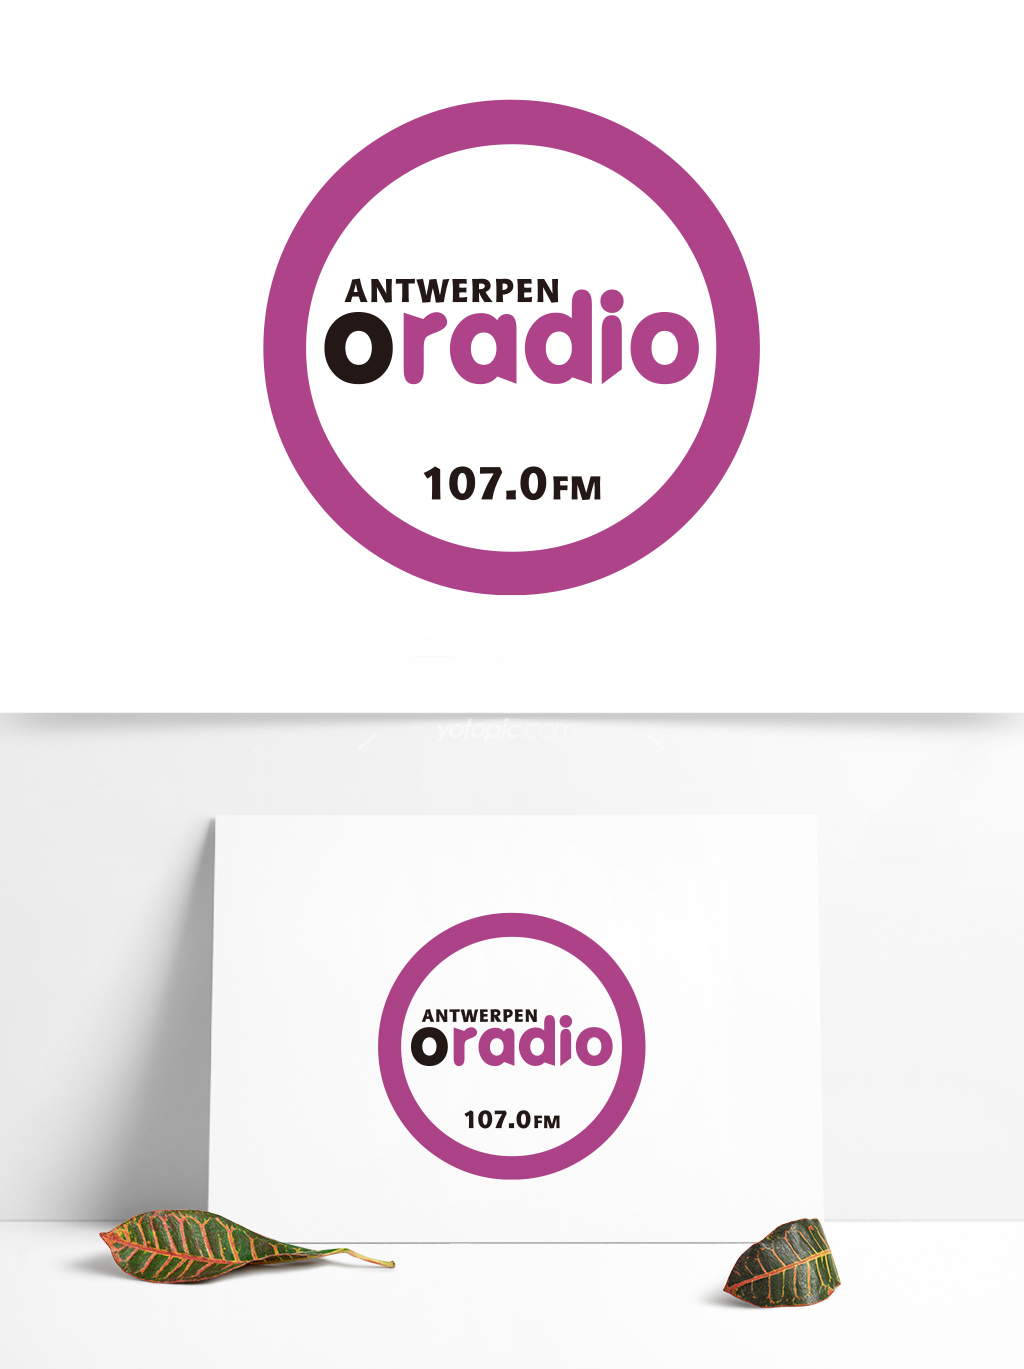 全球广播电台矢量标志 (189)